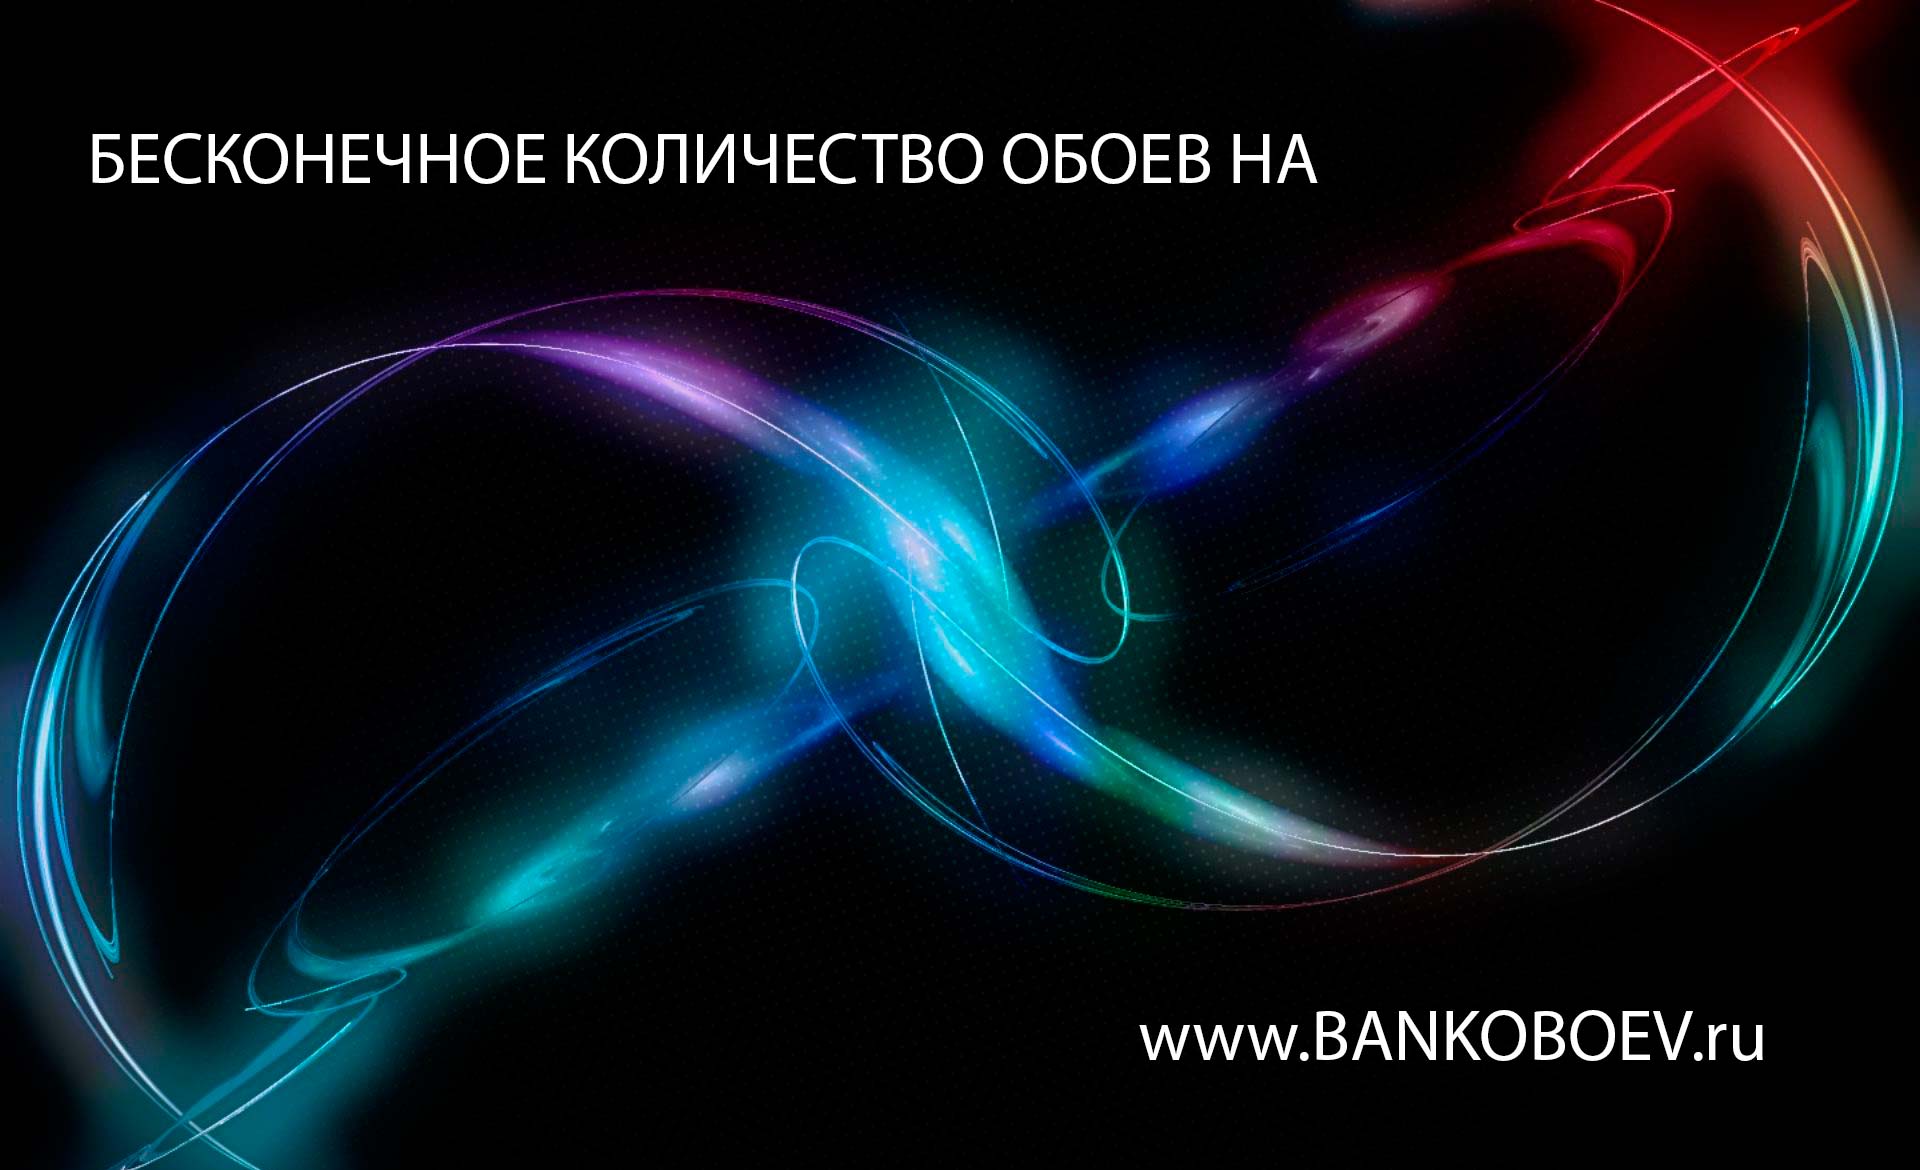 Ru Image Mji2ndux Bankoboev Jpg